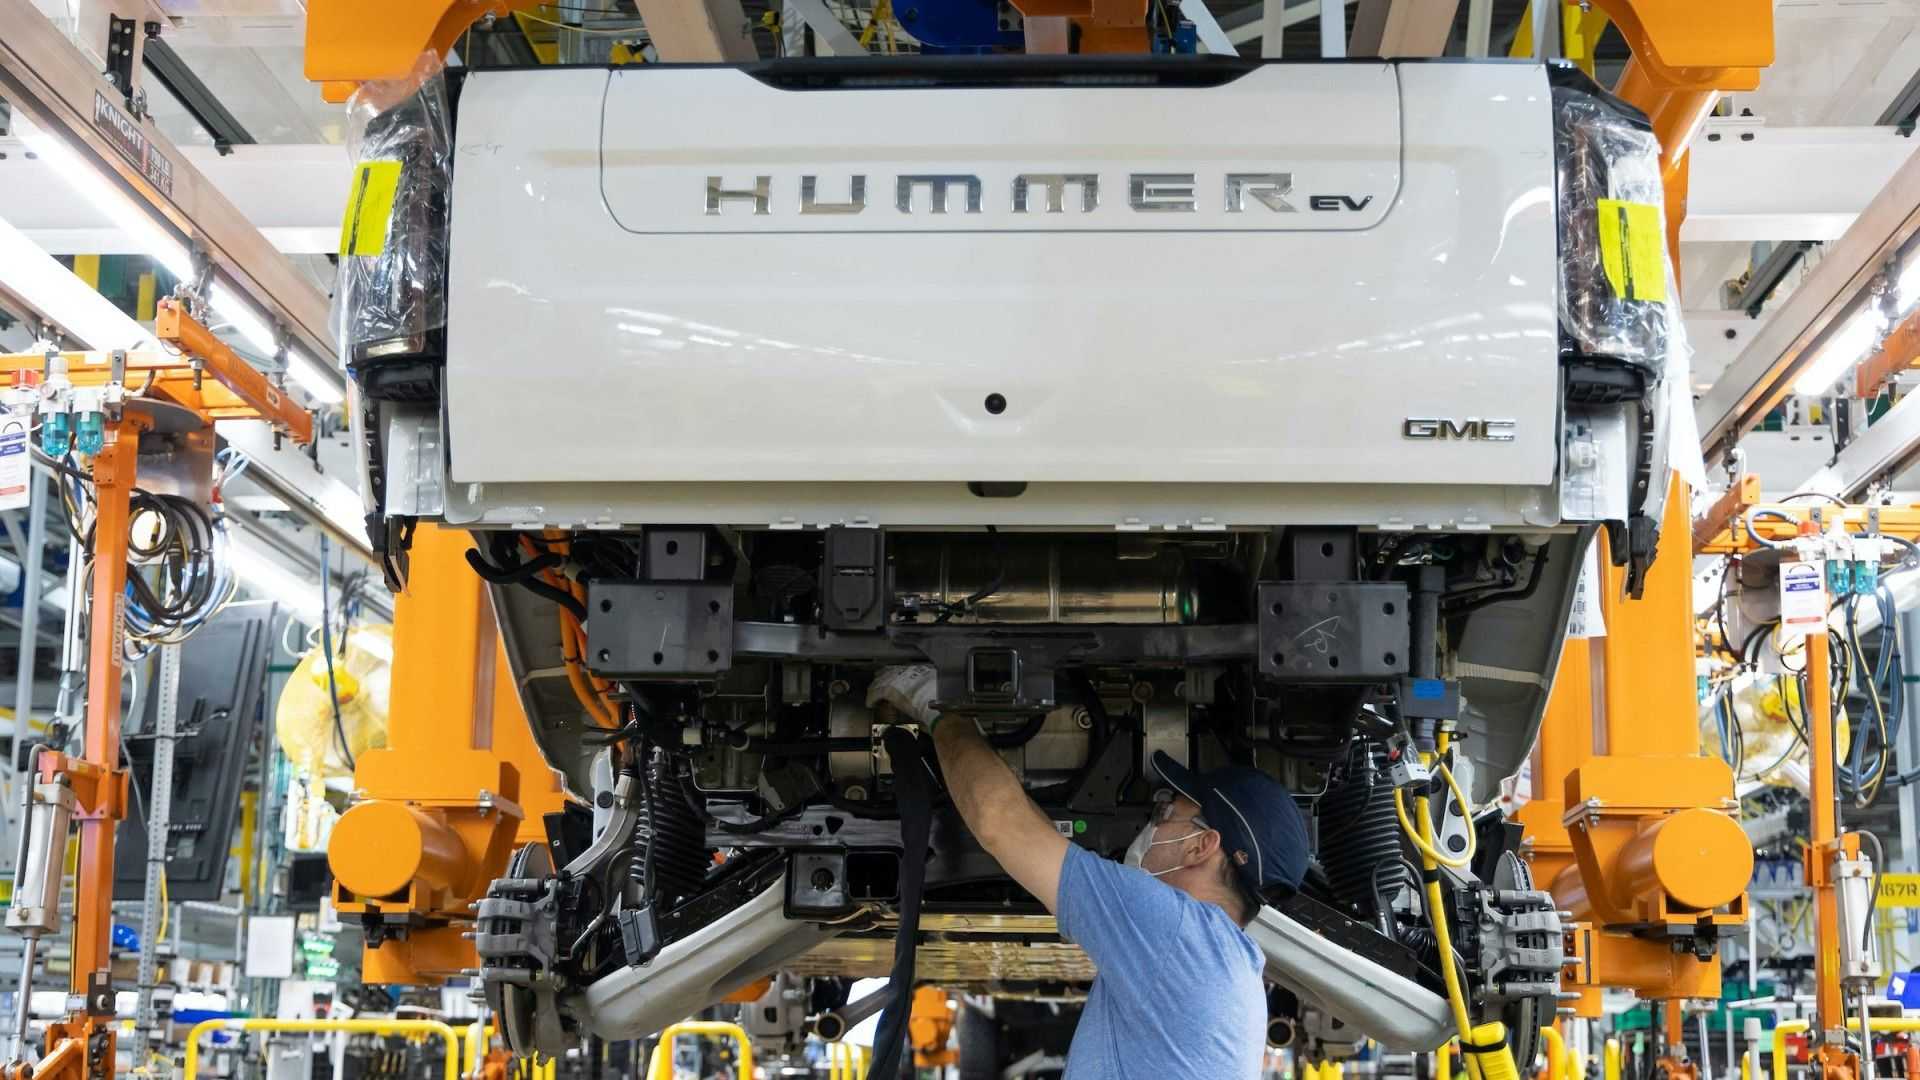 Gmc Hummer Ev Production Plant Back